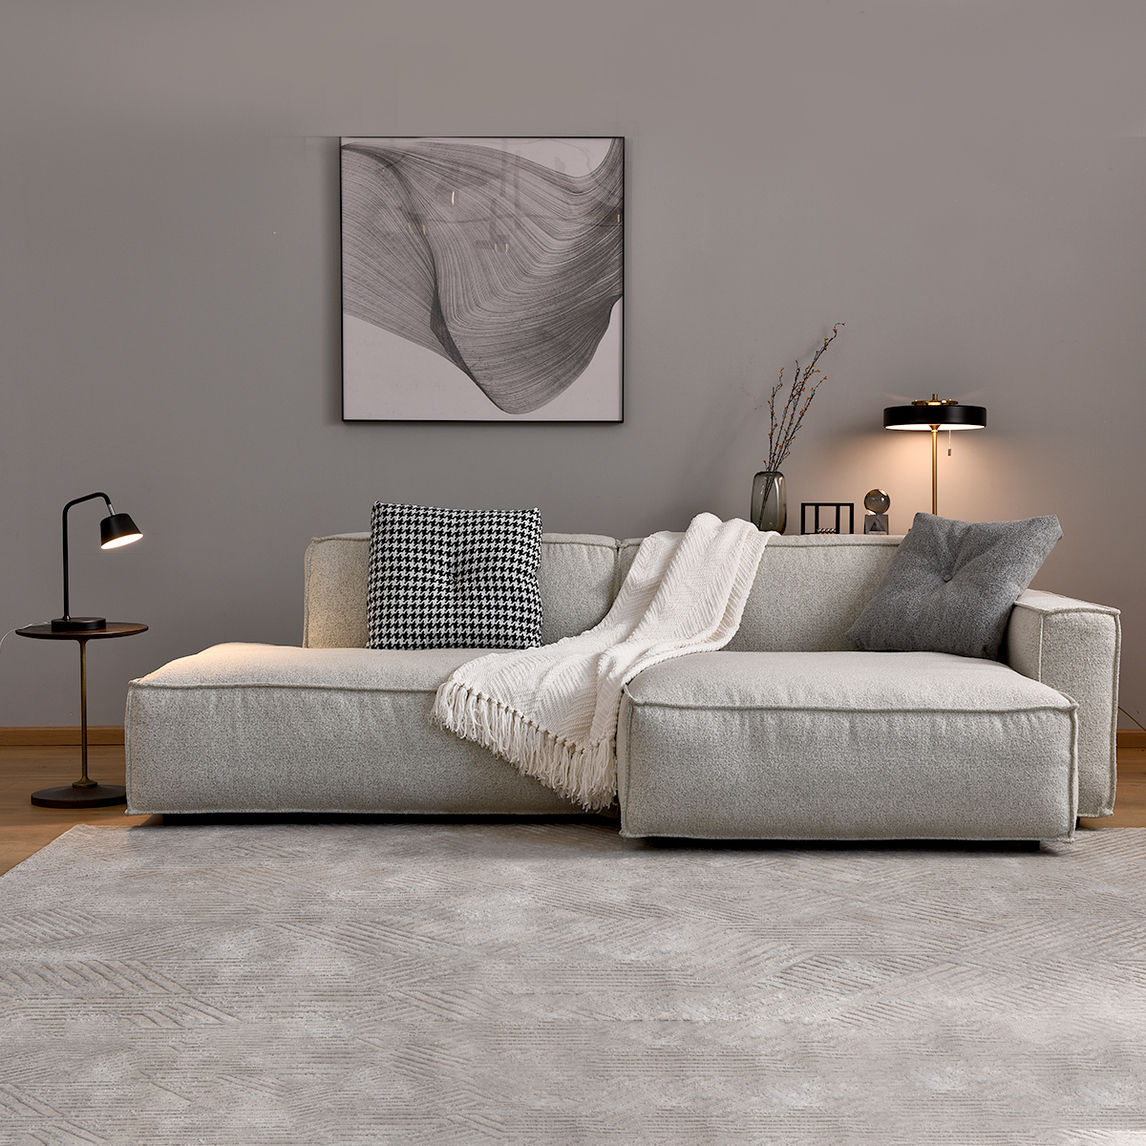 MonsenHome 现代棉麻客厅双人沙发_设计素材库免费下载-美间设计